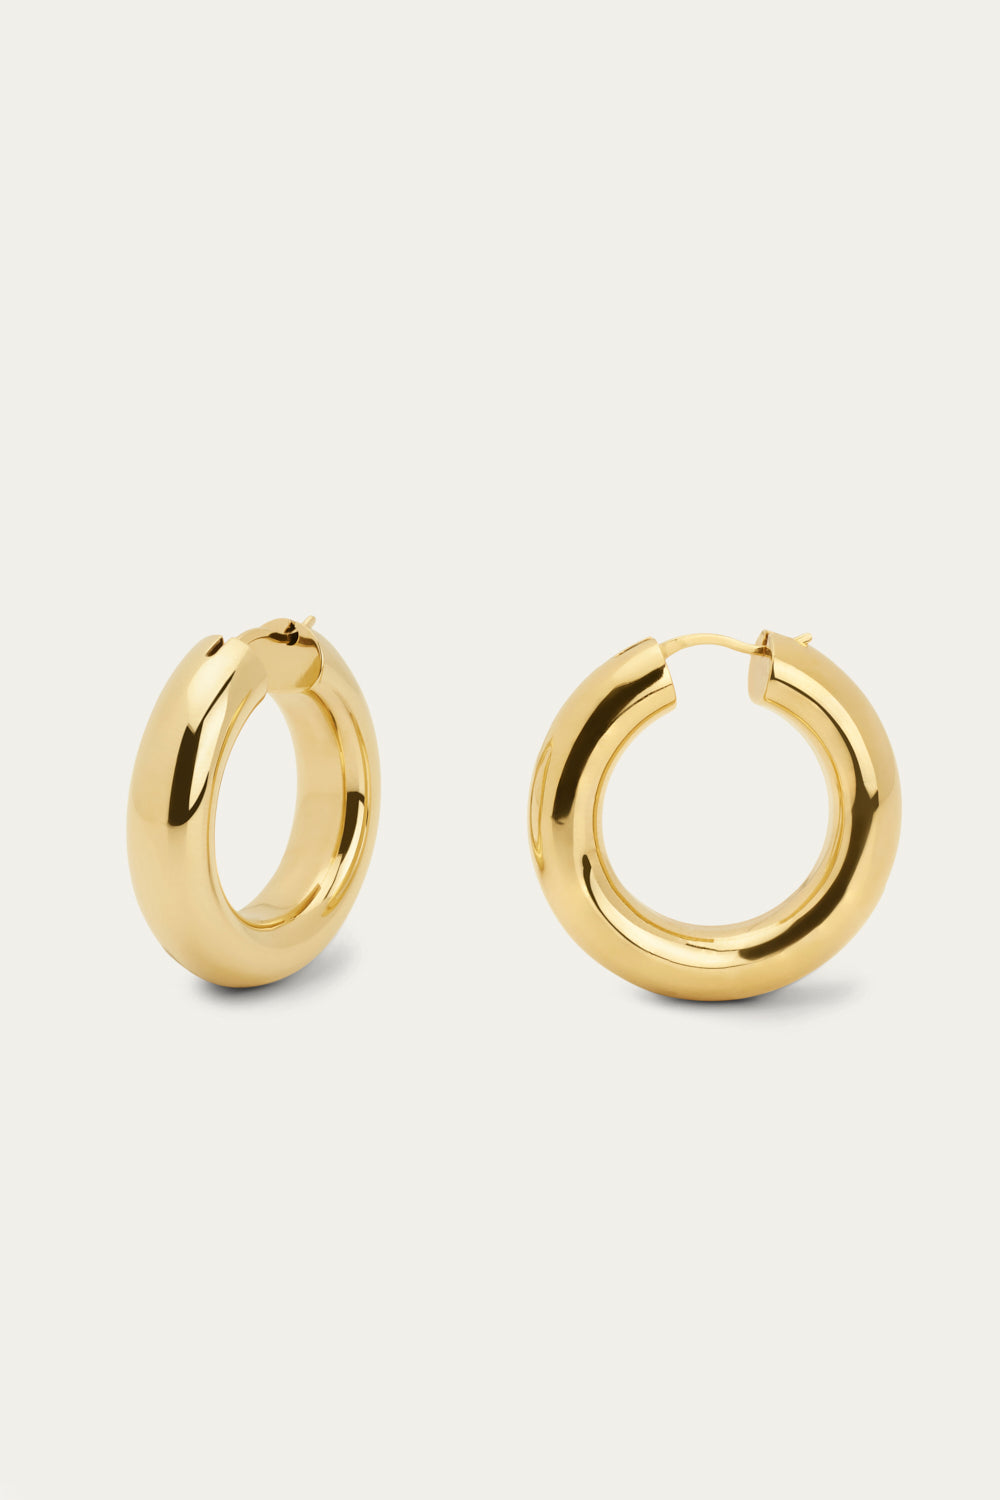 Gaga 3cm Gold Hoop Earrings | Galleria Armadoro